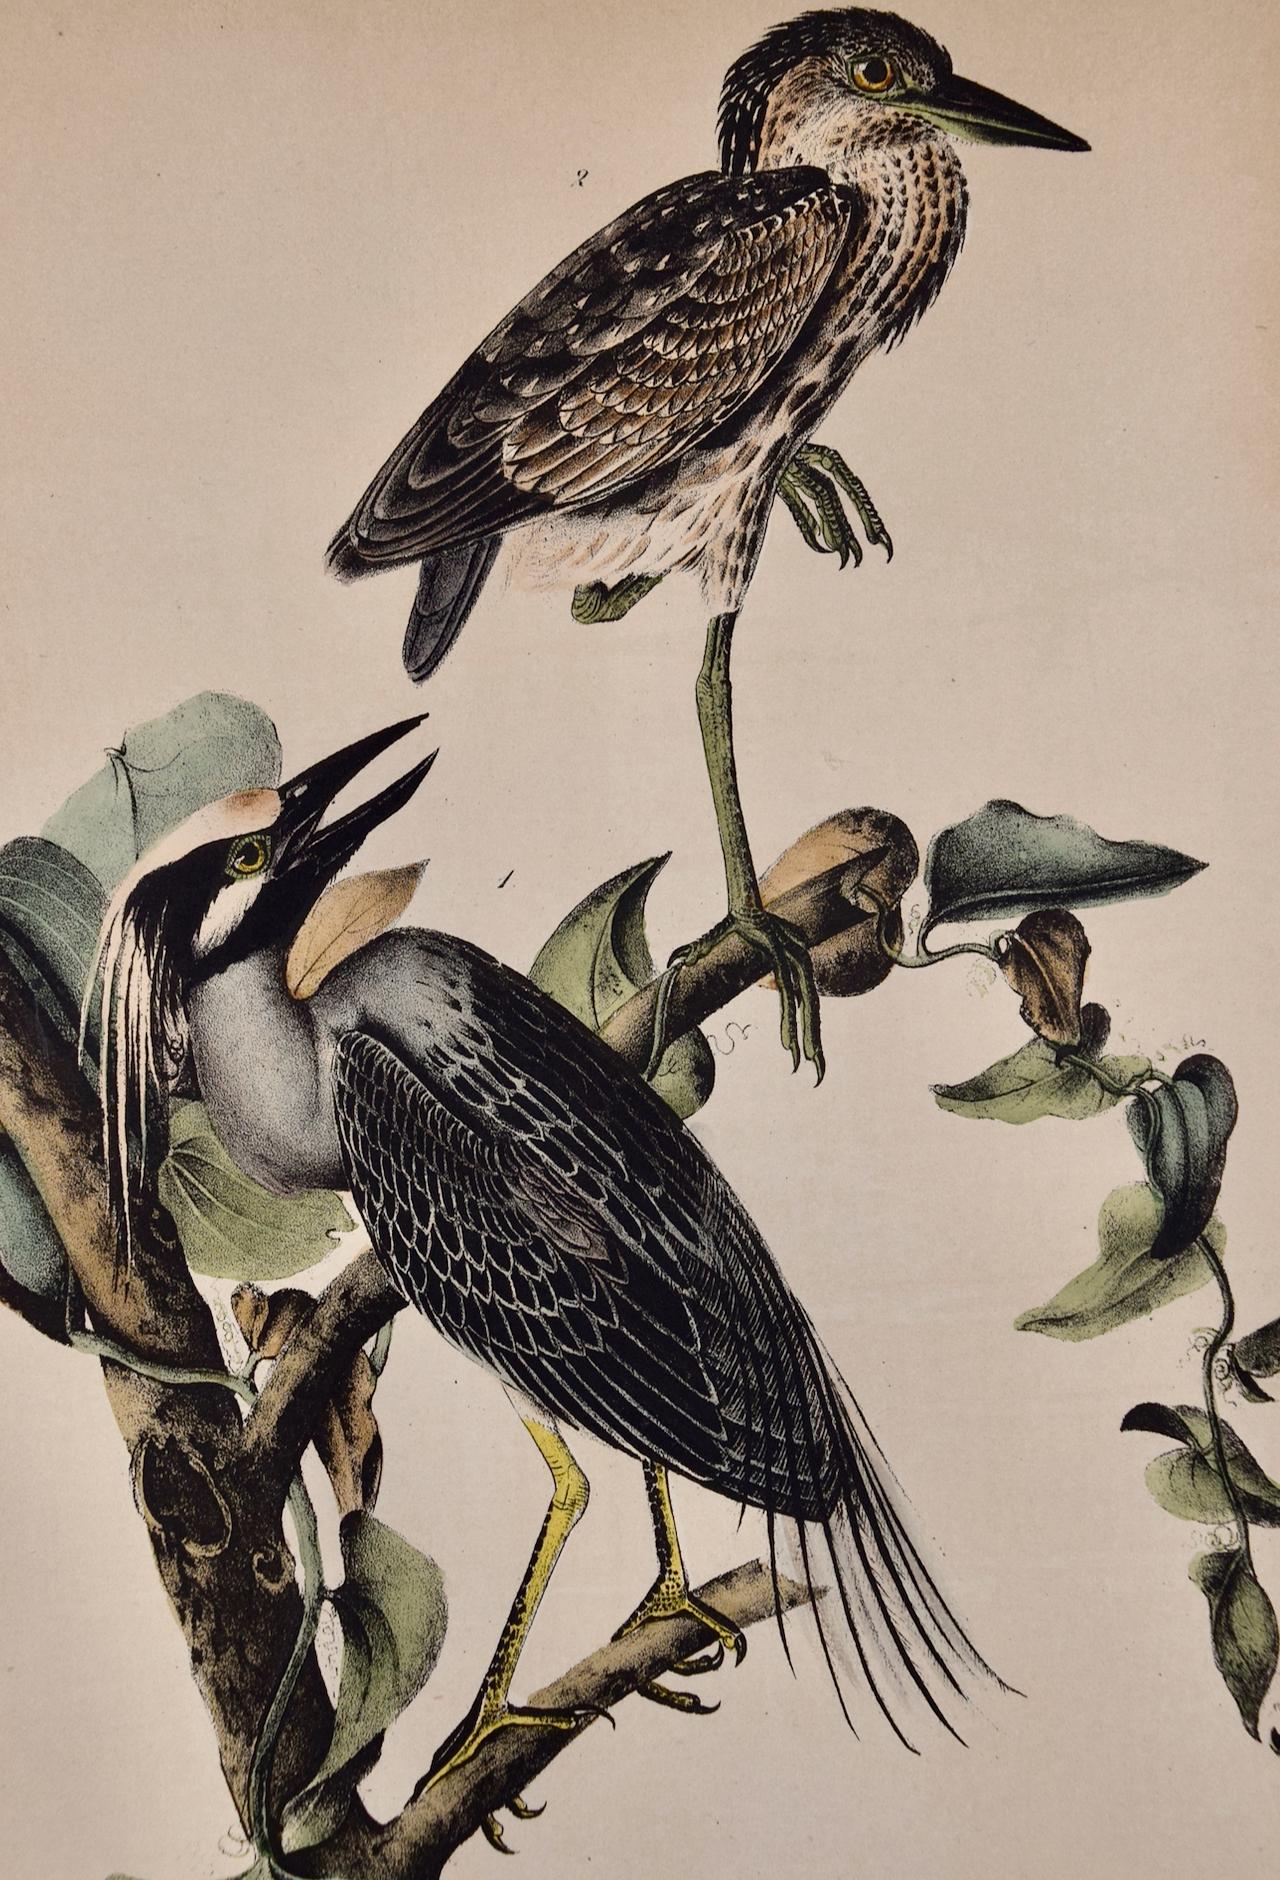 Night Heron Birds : une lithographie originale d'Audubon du 19e siècle colorée à la main - Print de John James Audubon